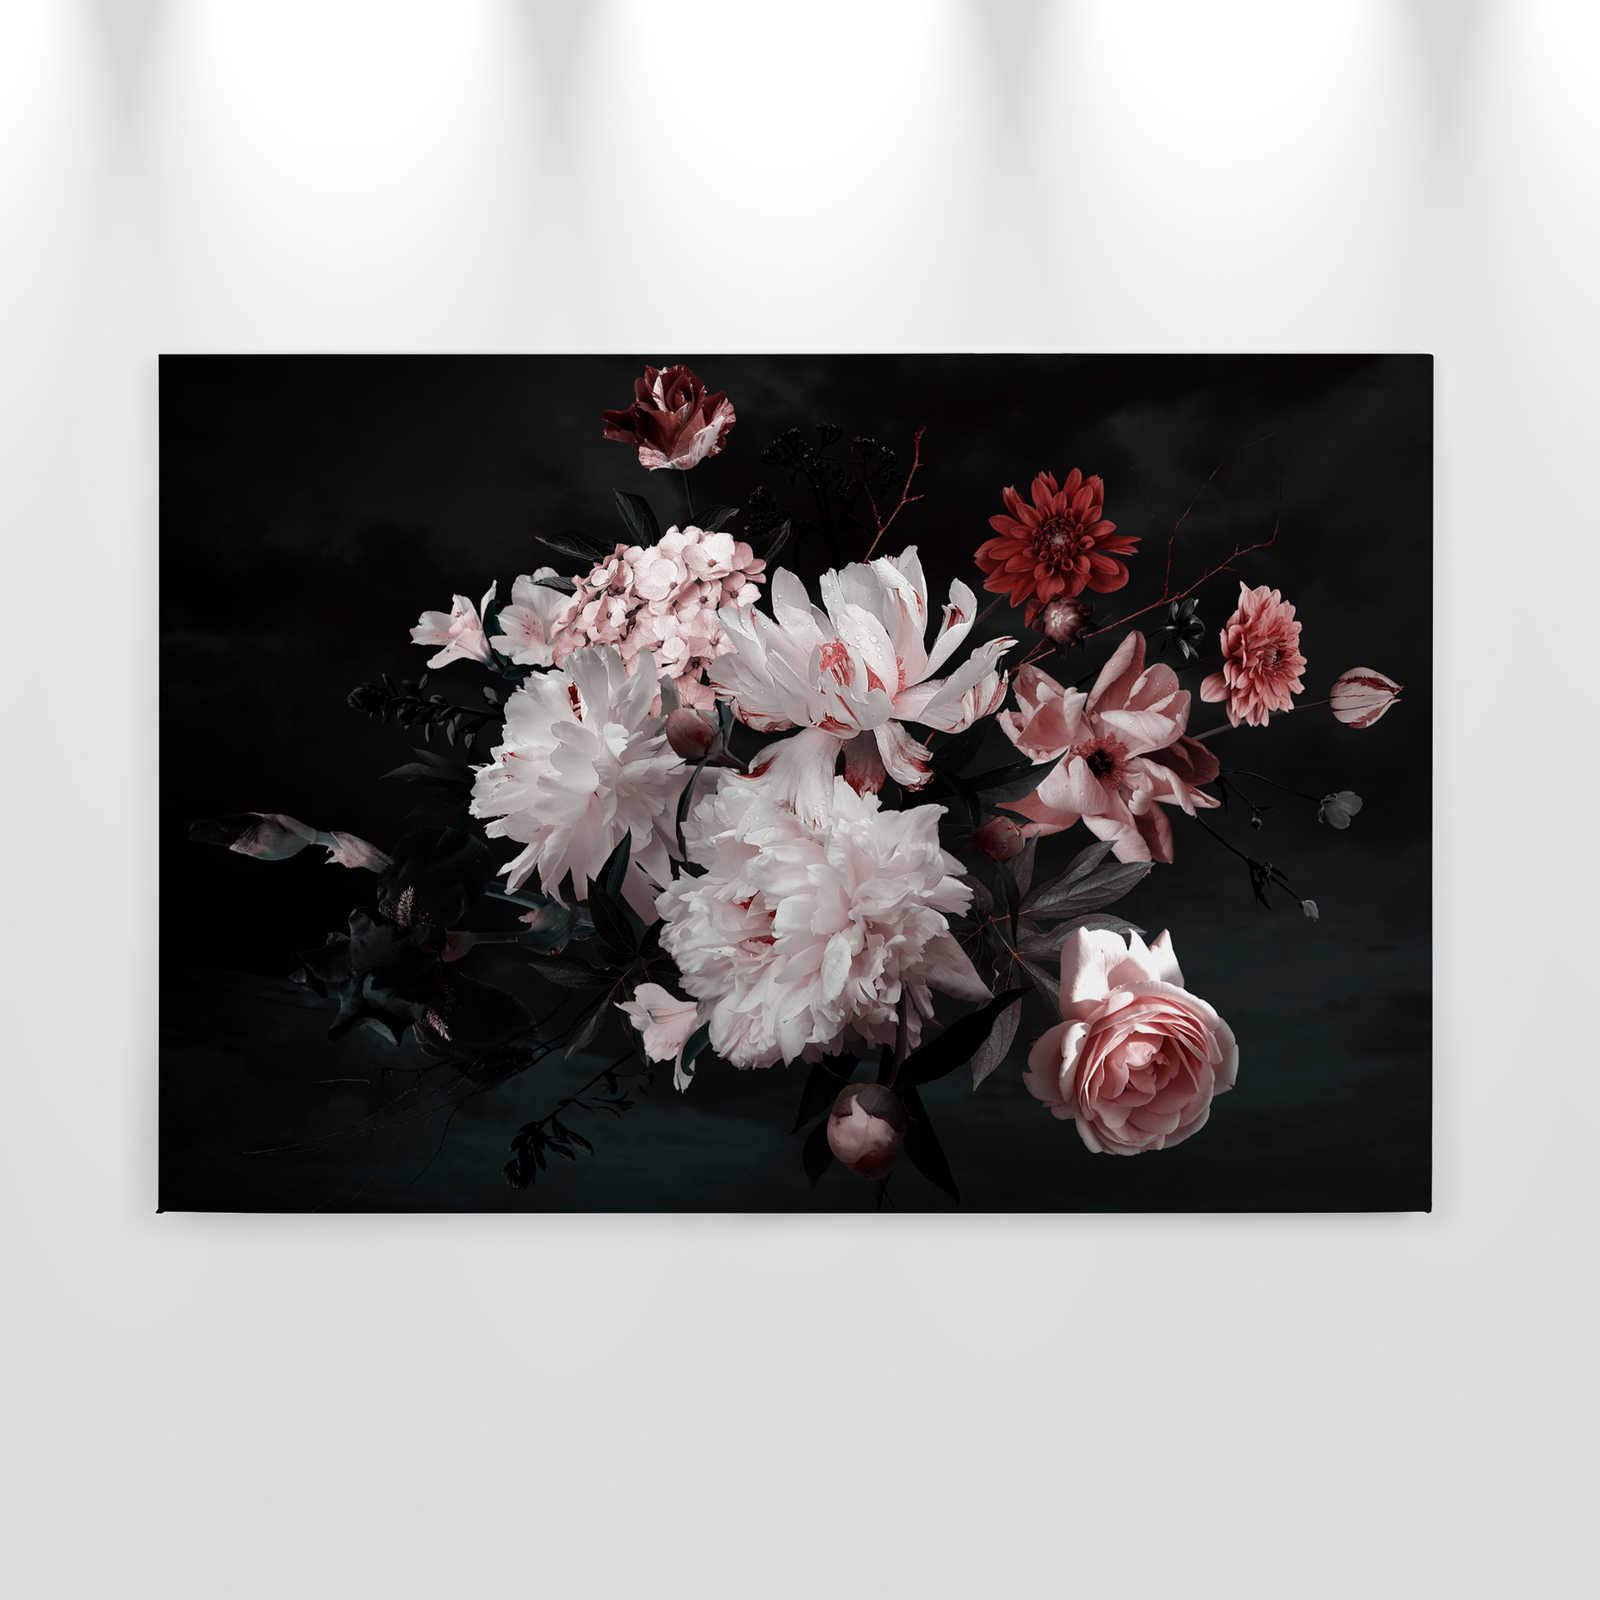             Bouquet Canvas - 0,90 m x 0,60 m
        